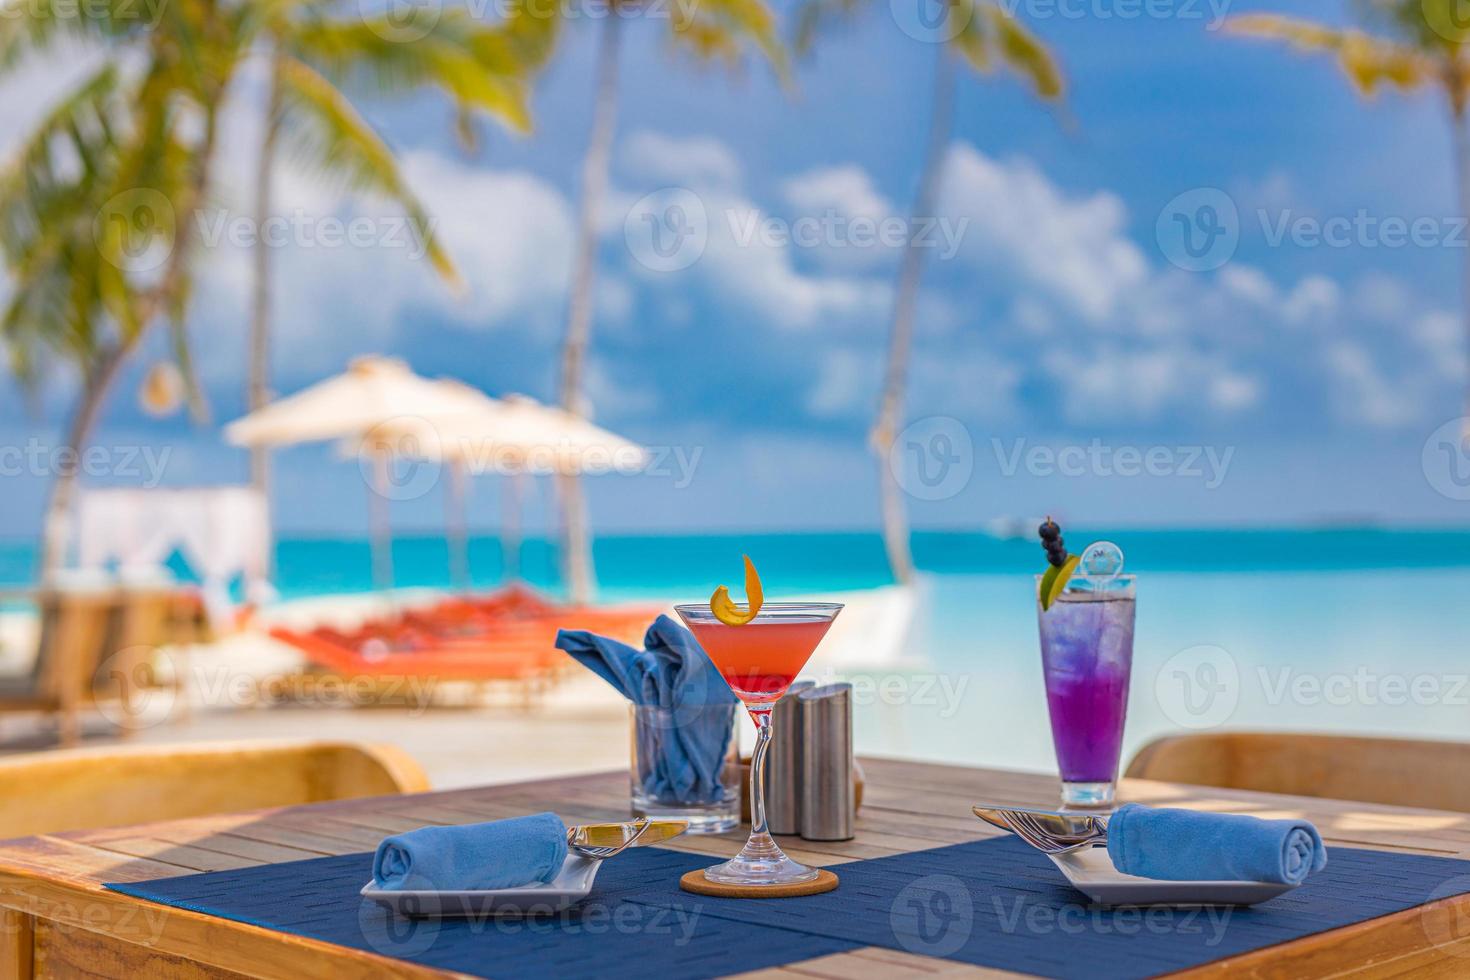 luxe resorthotel aan het zwembad, openluchtrestaurant op het strand, de oceaan en de lucht, tropisch eilandcafé, tafels, eten. zomervakantie of vakantie, familie reizen. palmbomen, overloopzwembad, cocktails, relax foto